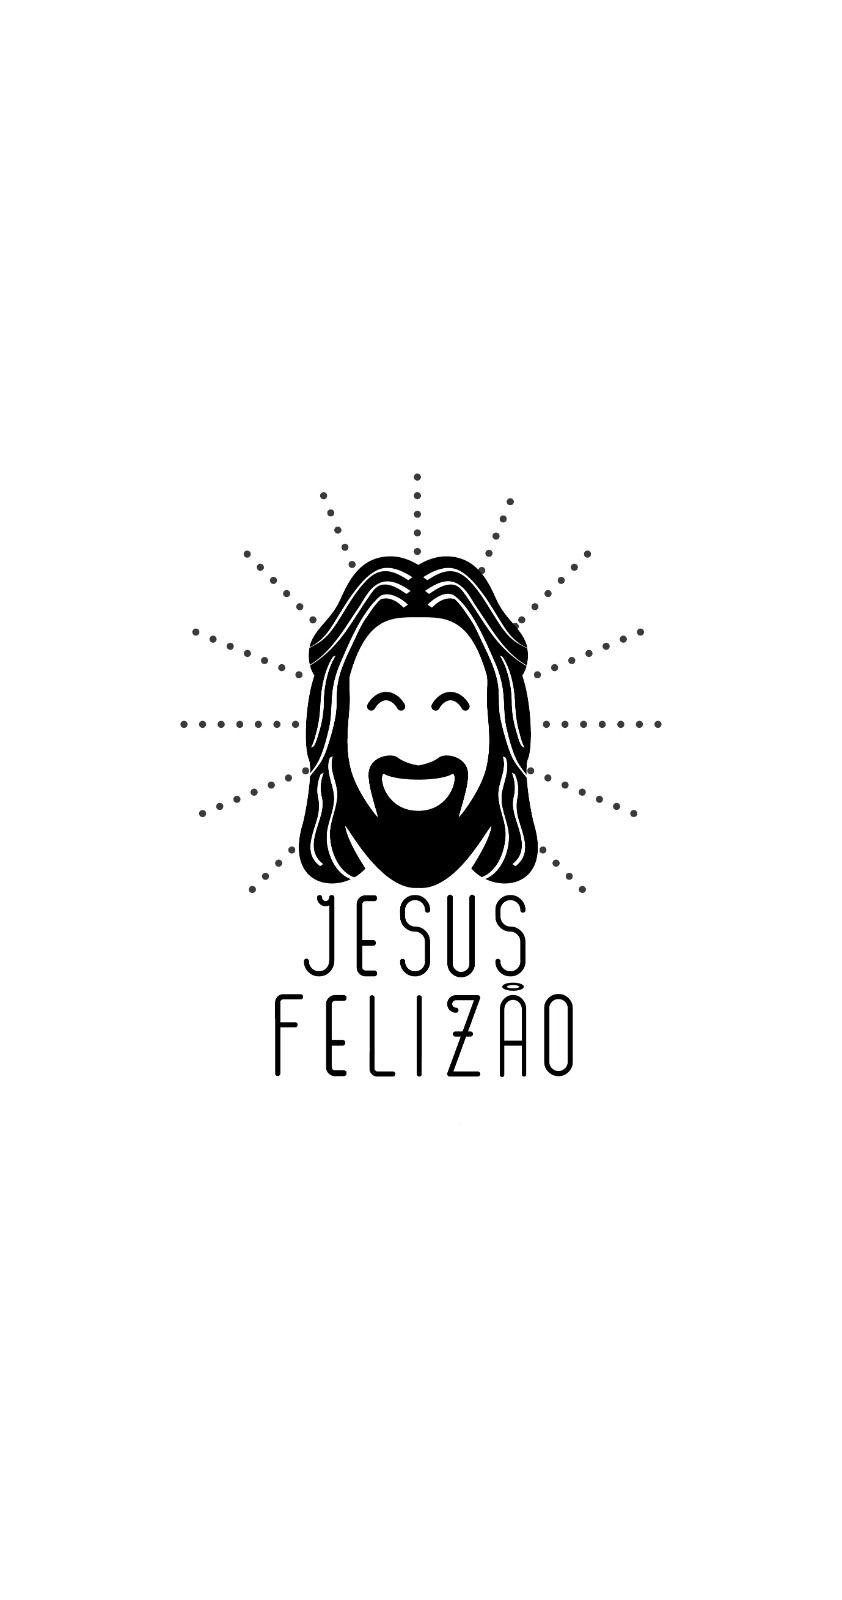 Jesus felizao 